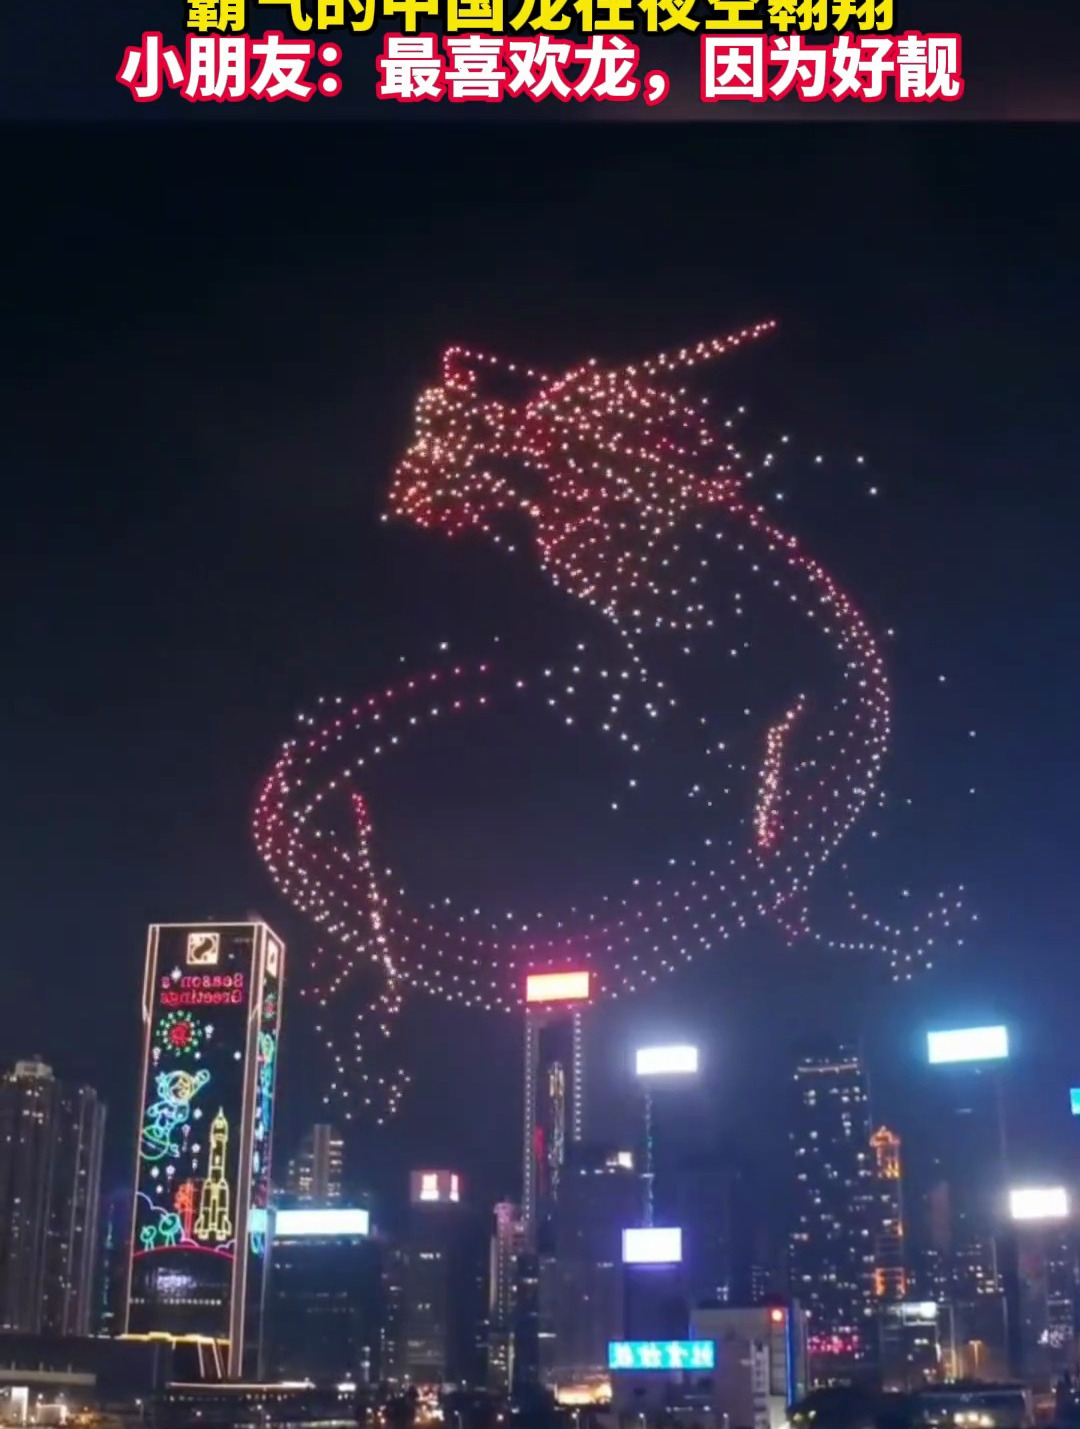 香港无人机夜空上演飞龙在天霸气的中国龙在夜空翱翔